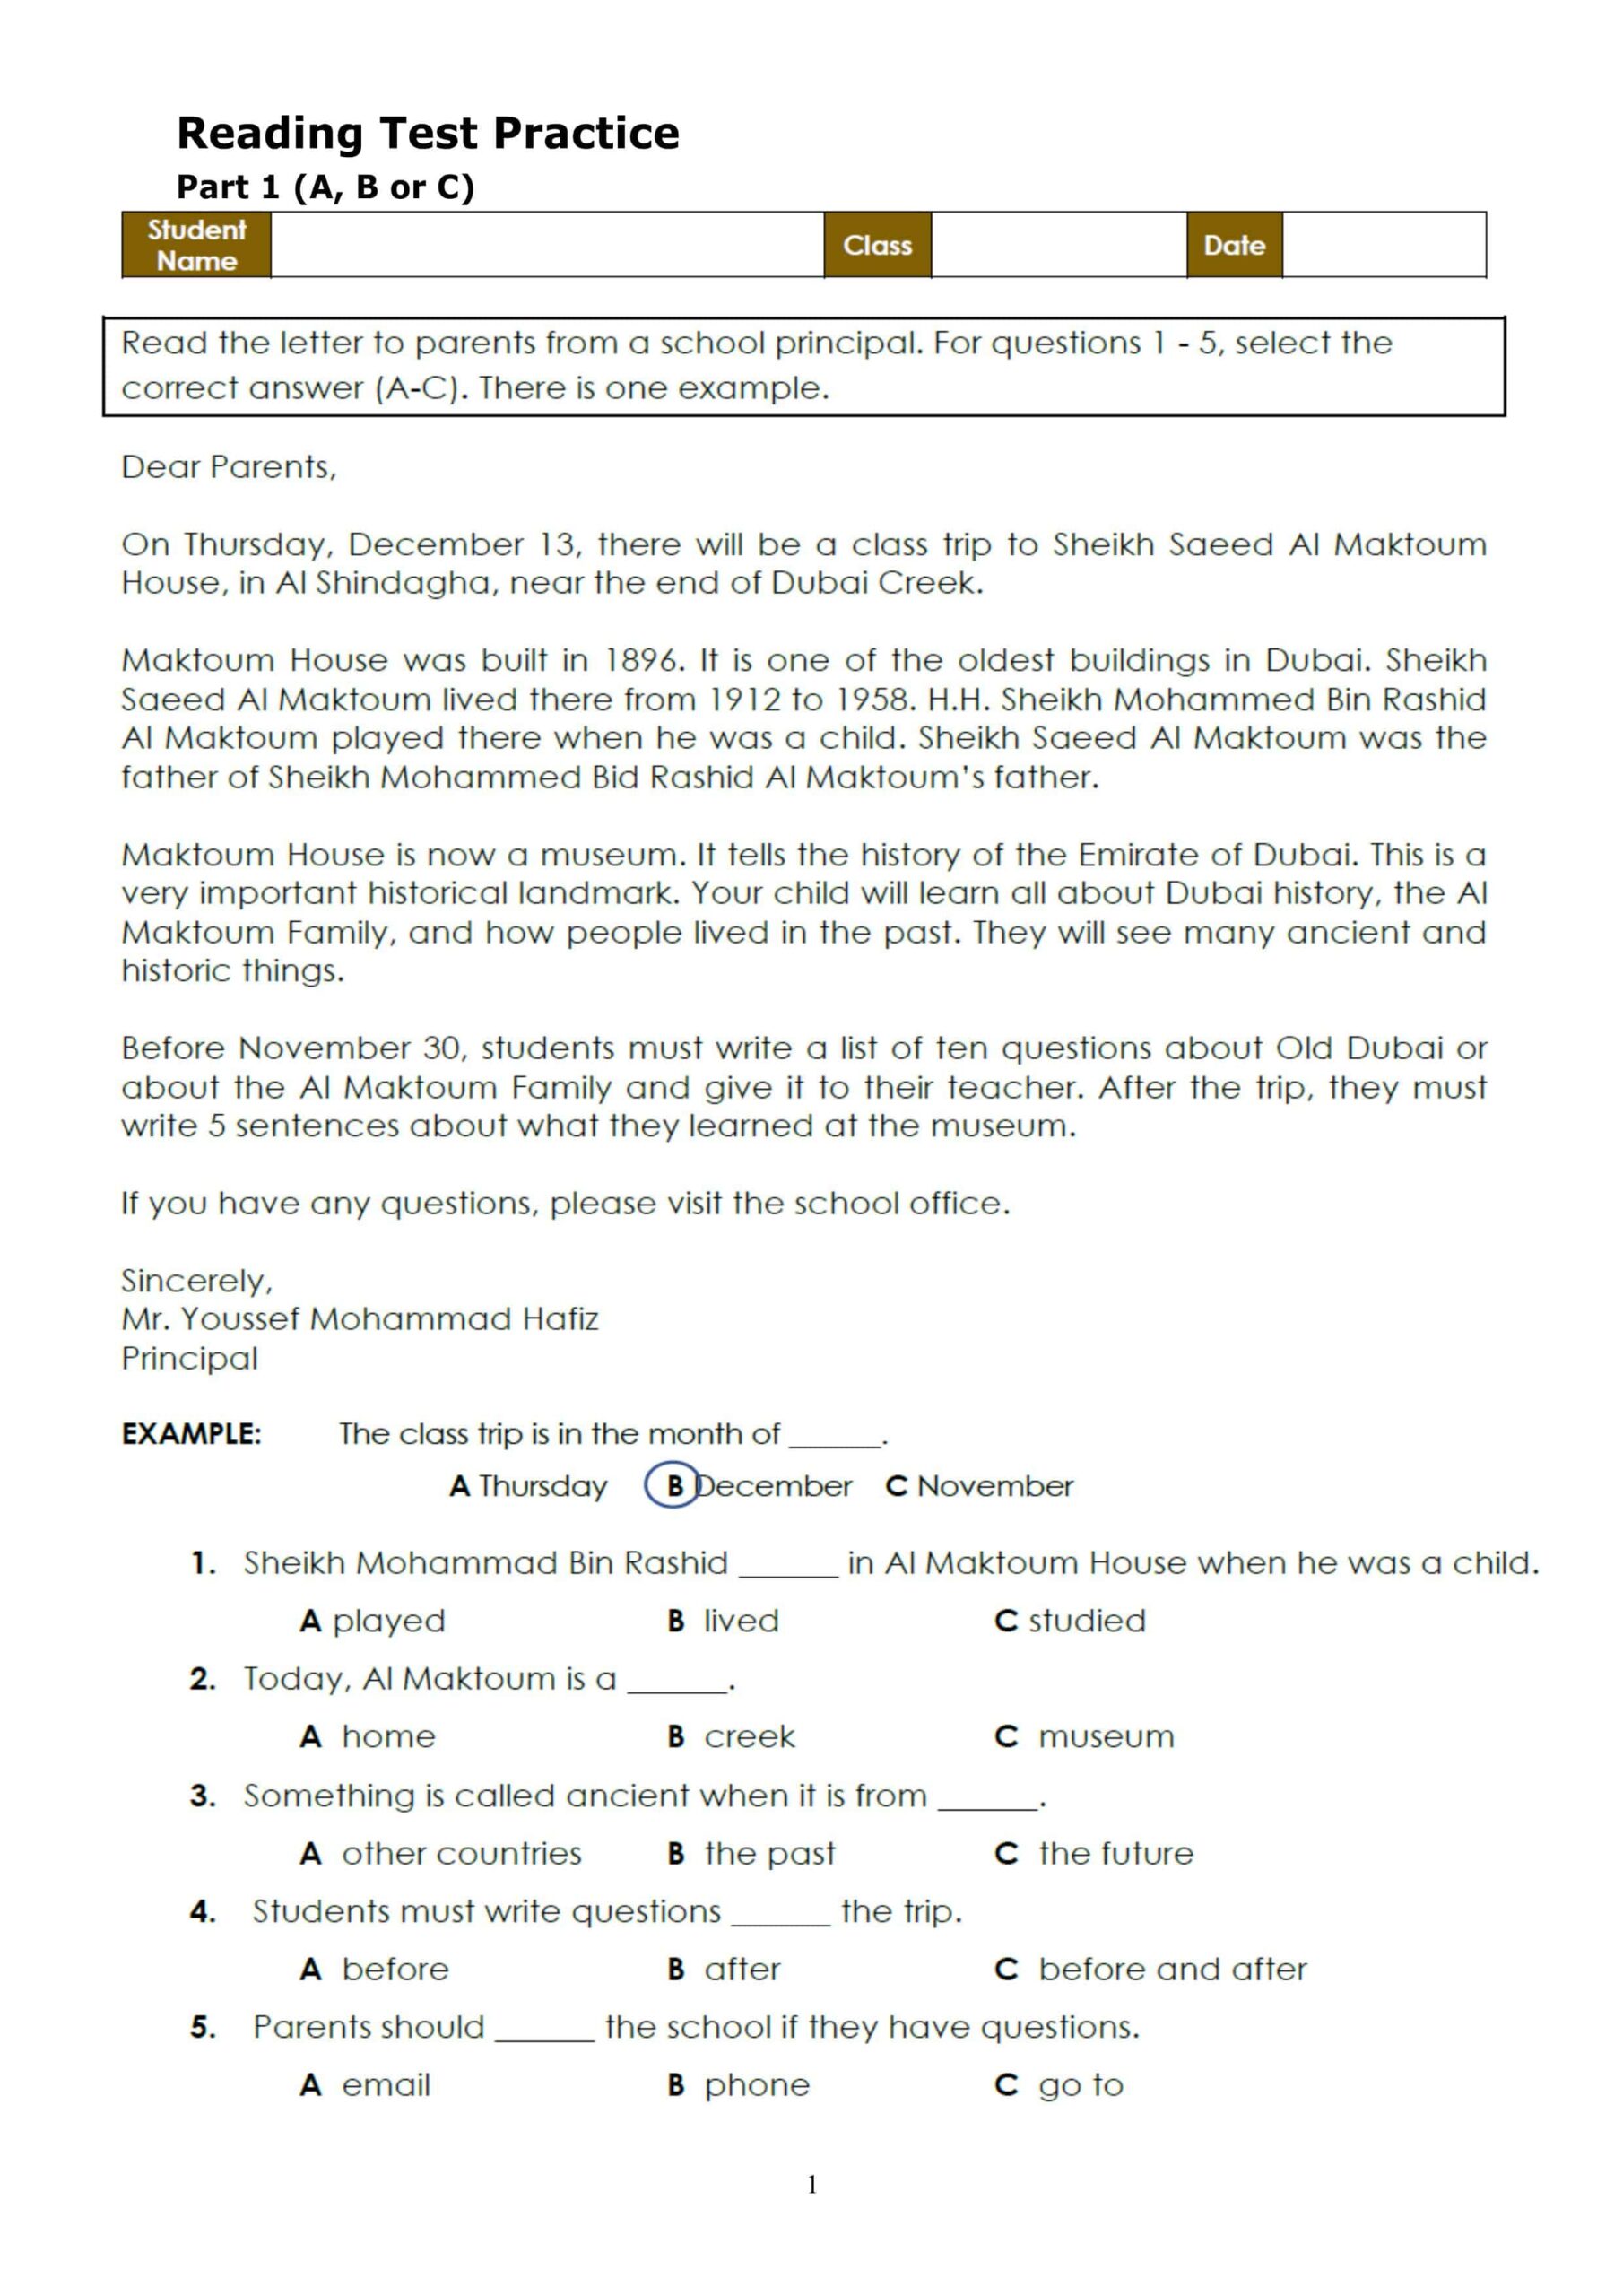 ورقة عمل Reading Test Practice اللغة الإنجليزية الصف الرابع